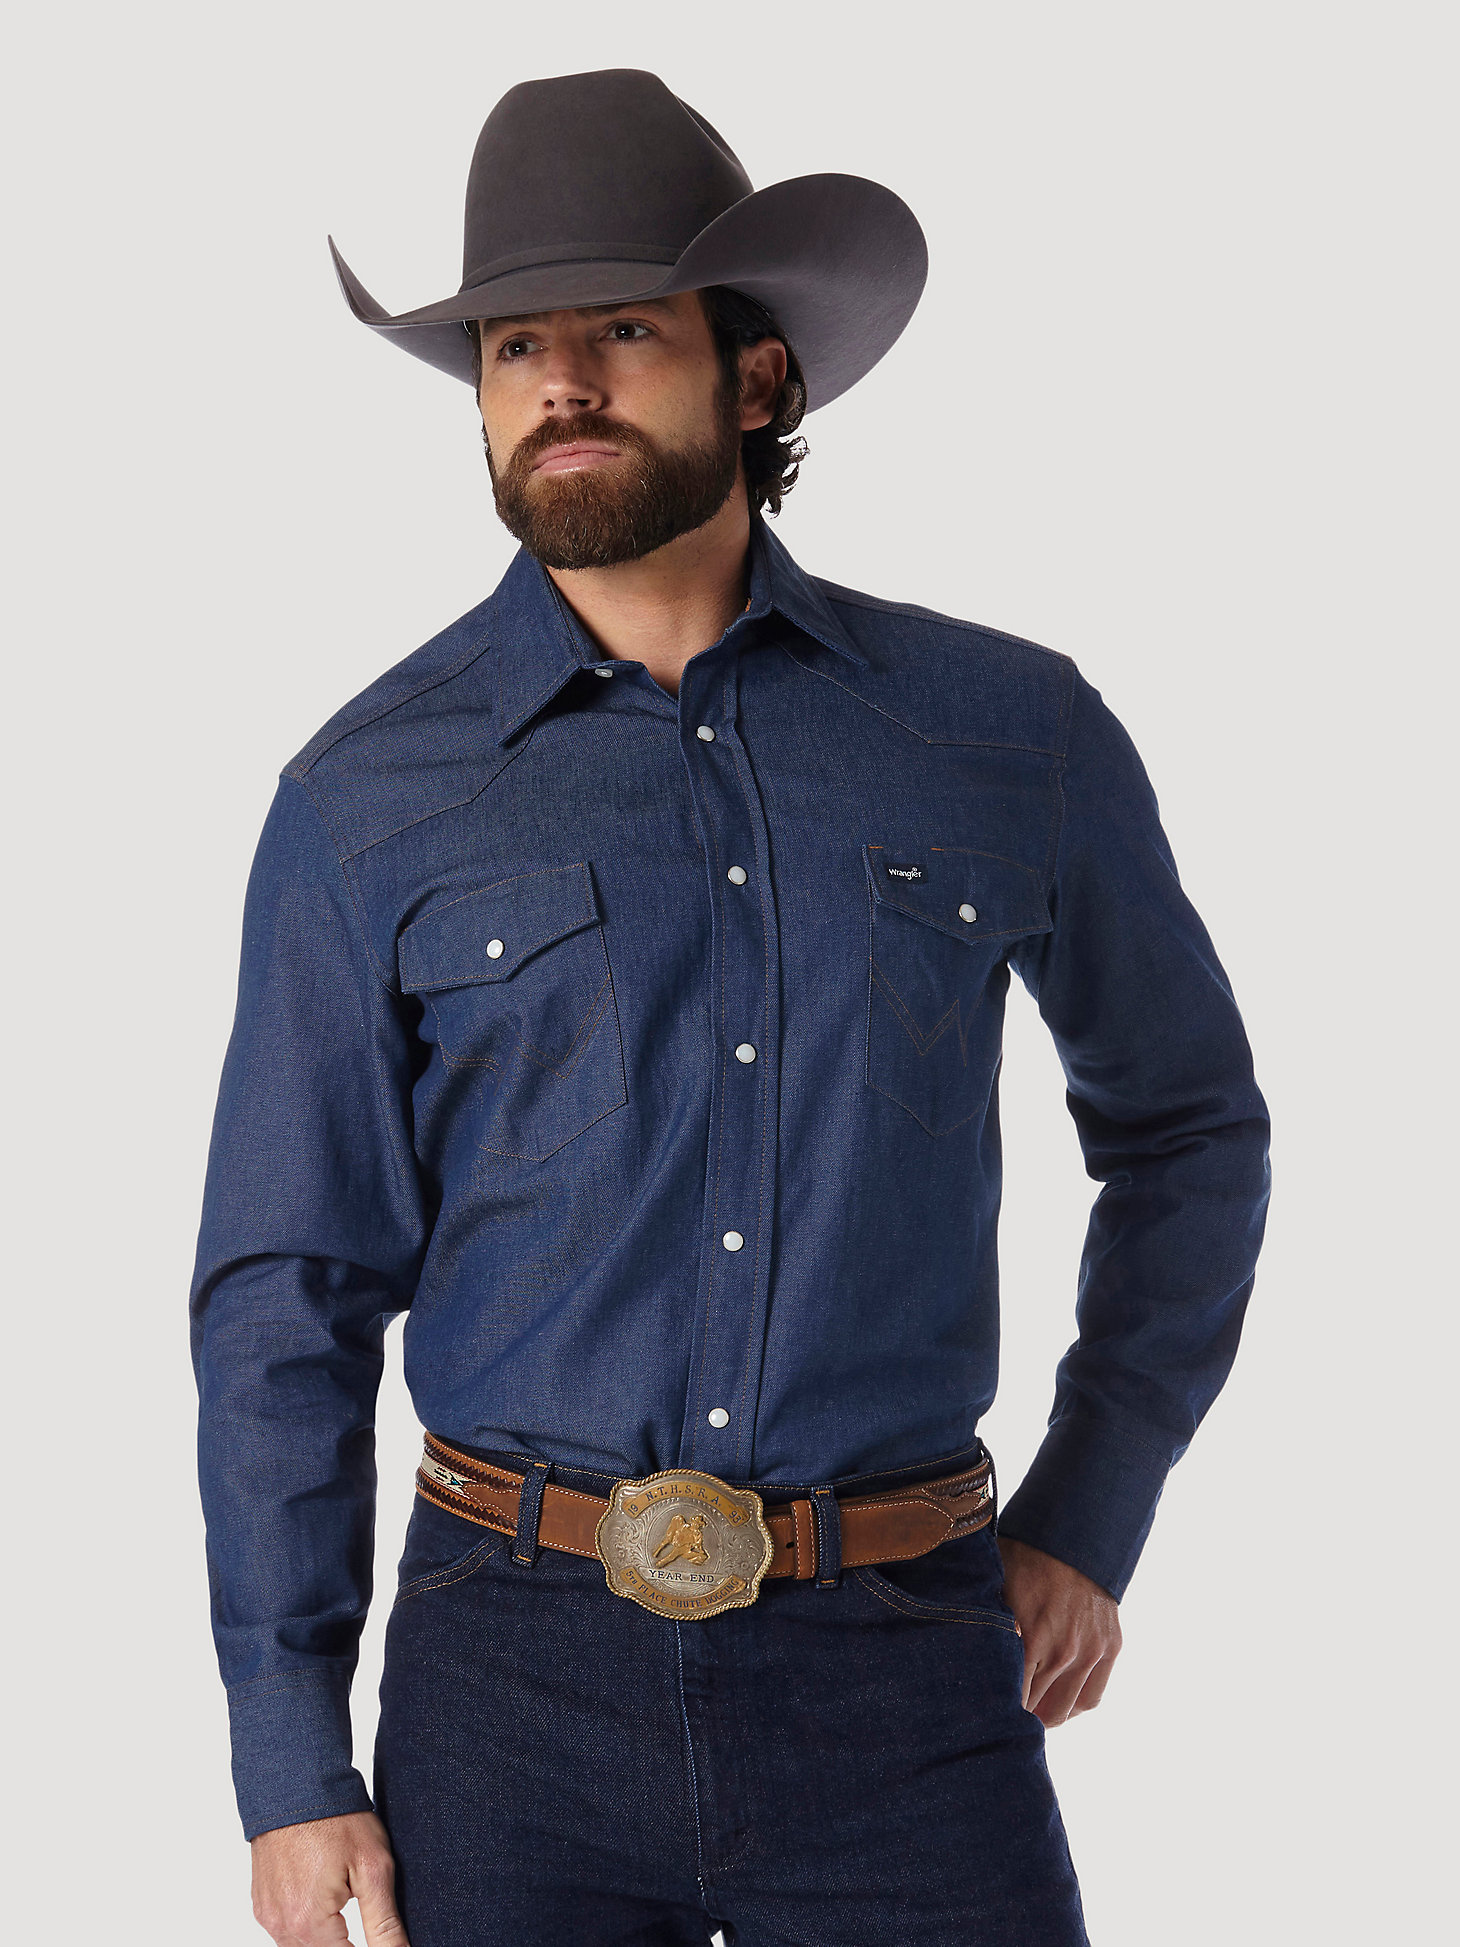 Cowboy Cut® Work Western Rigid Denim Long Sleeve Shirt in Rigid Indigo alternative view 3